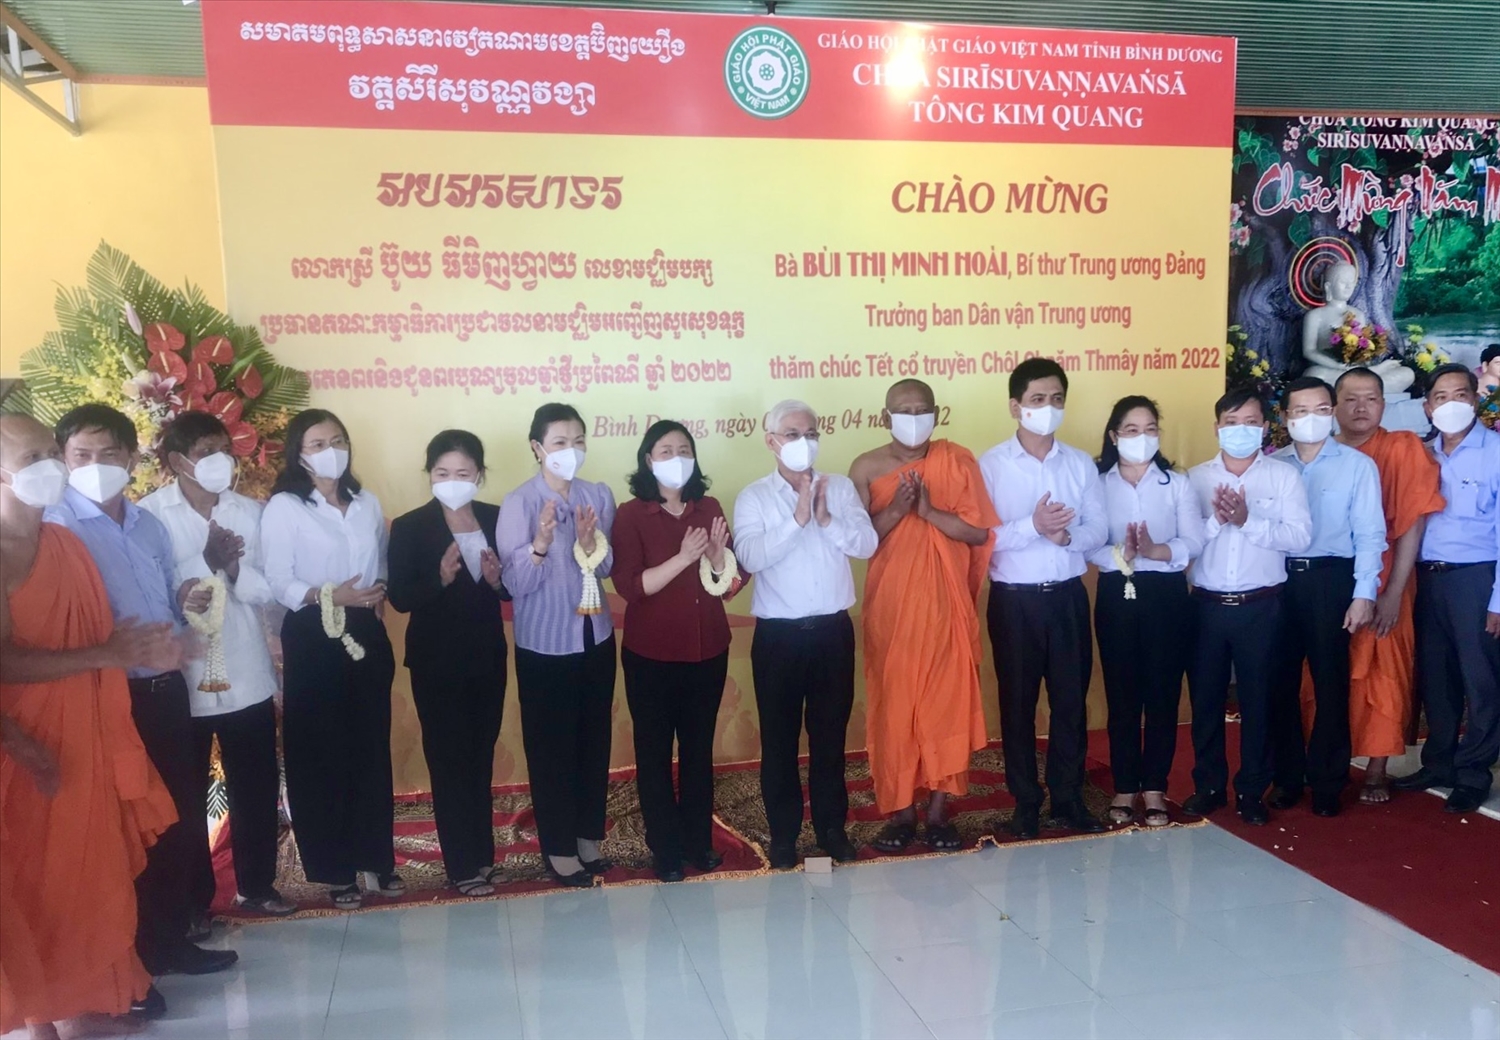 Đoàn công tác thăm, tặng quà và chúc tết cổ truyền Chôl Chnăm Thmây đồng bào Khmer tại chùa Tông Kim Quang, thuộc huyện Phú Giáo, tỉnh Bình Dương